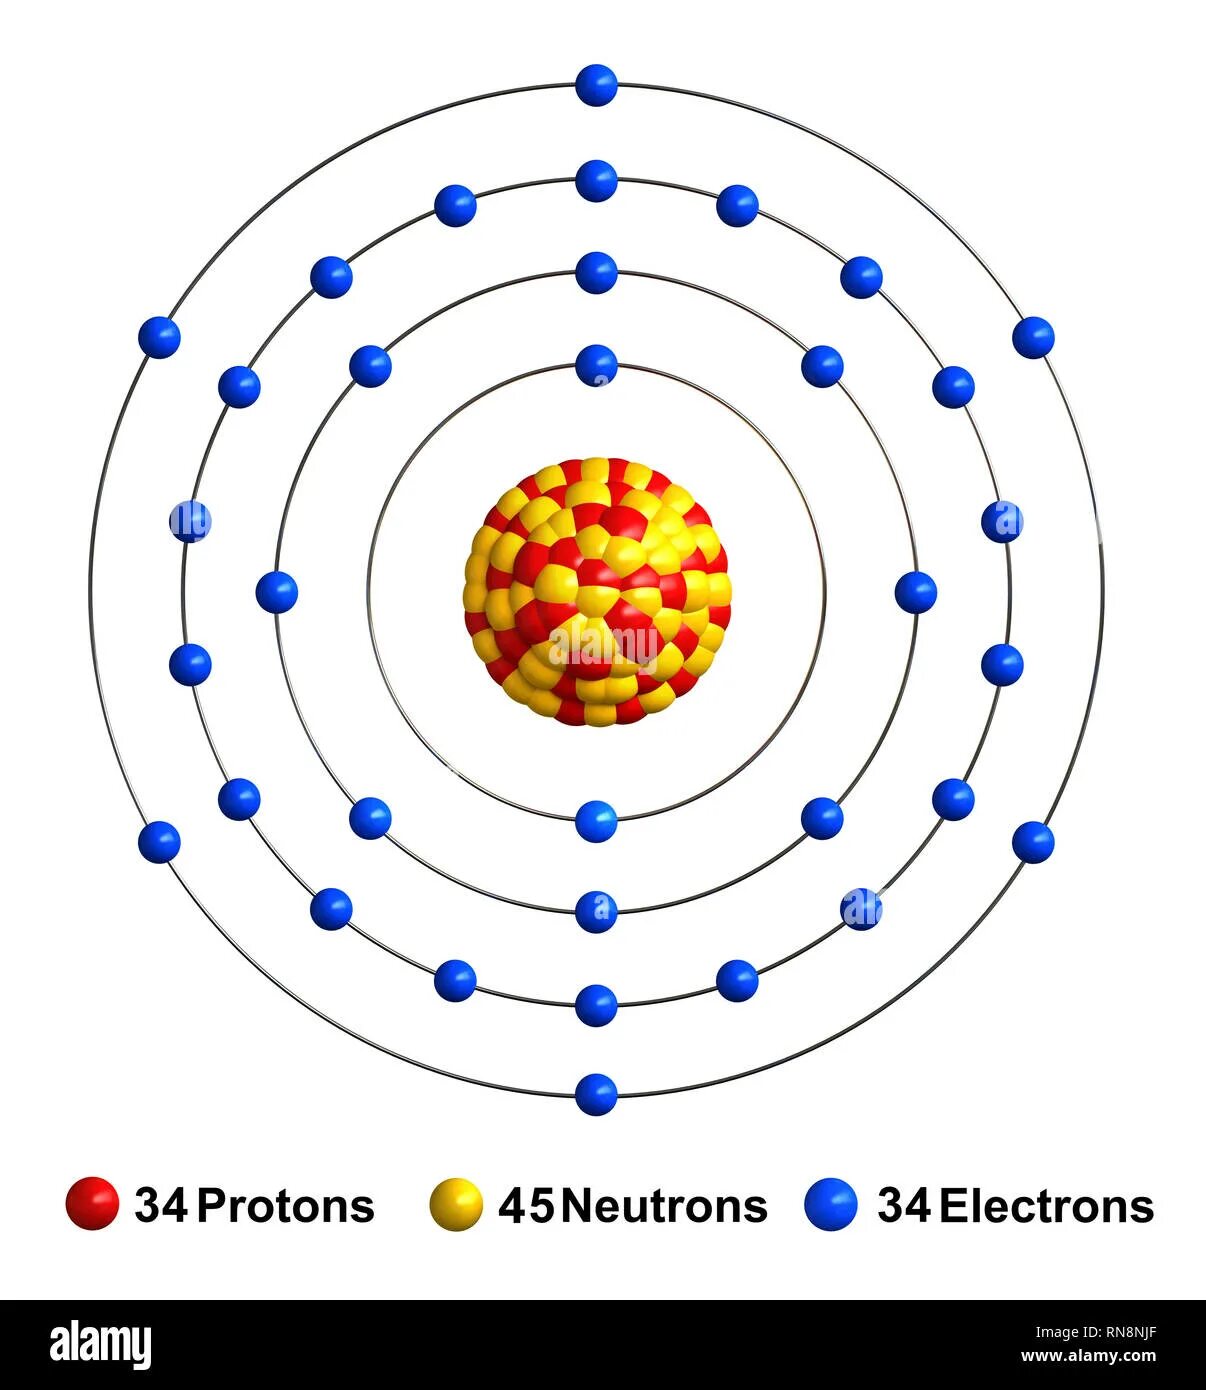 Кольцегранная модель атома. Кольцегранная модель атома Снельсона. Атом галлия. Волногранная модель атома.